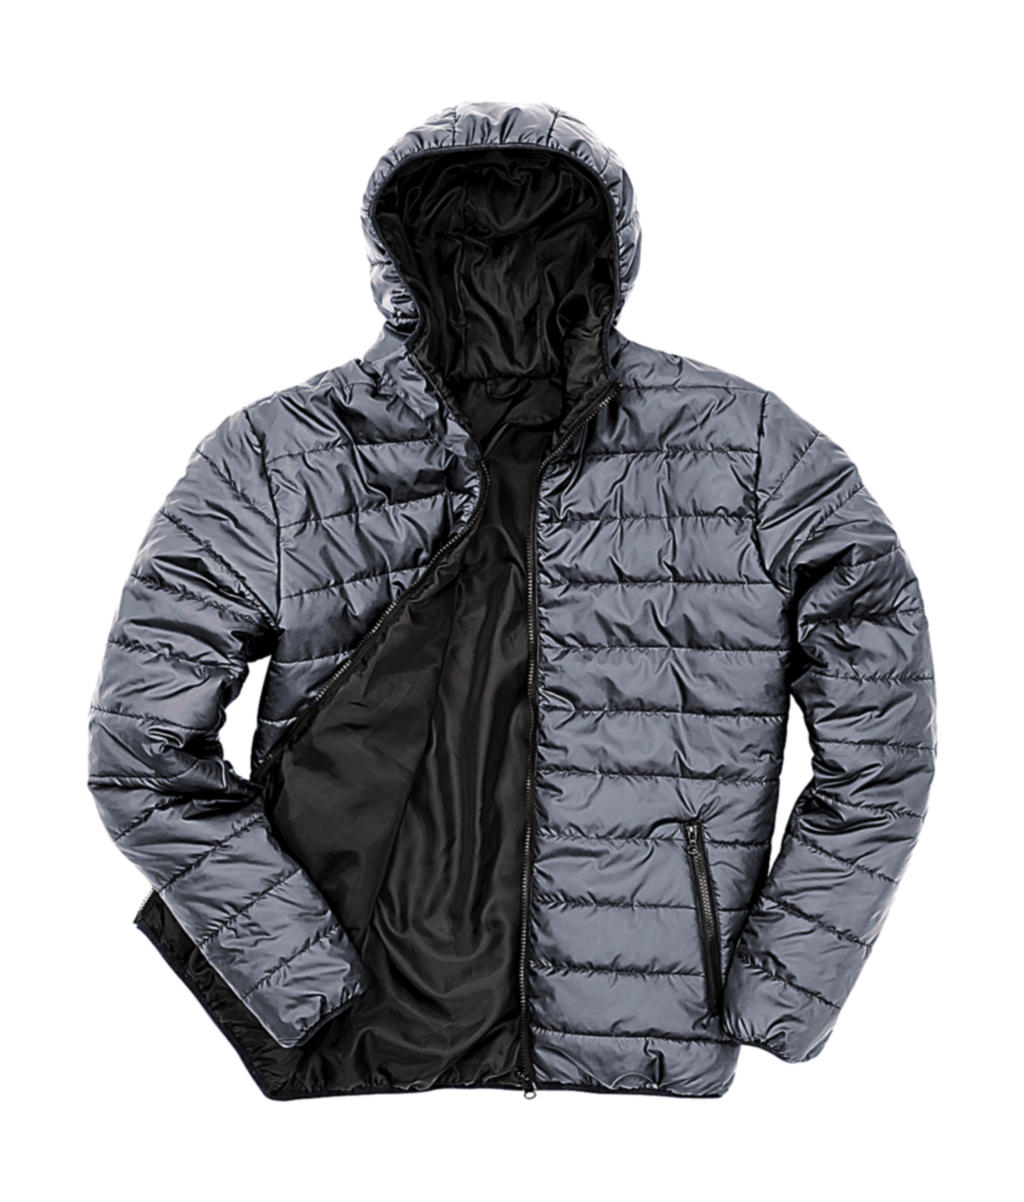 Pánská polstrovaná bunda Result s kapucí Velikost: L, Barva: Frost Grey/Black